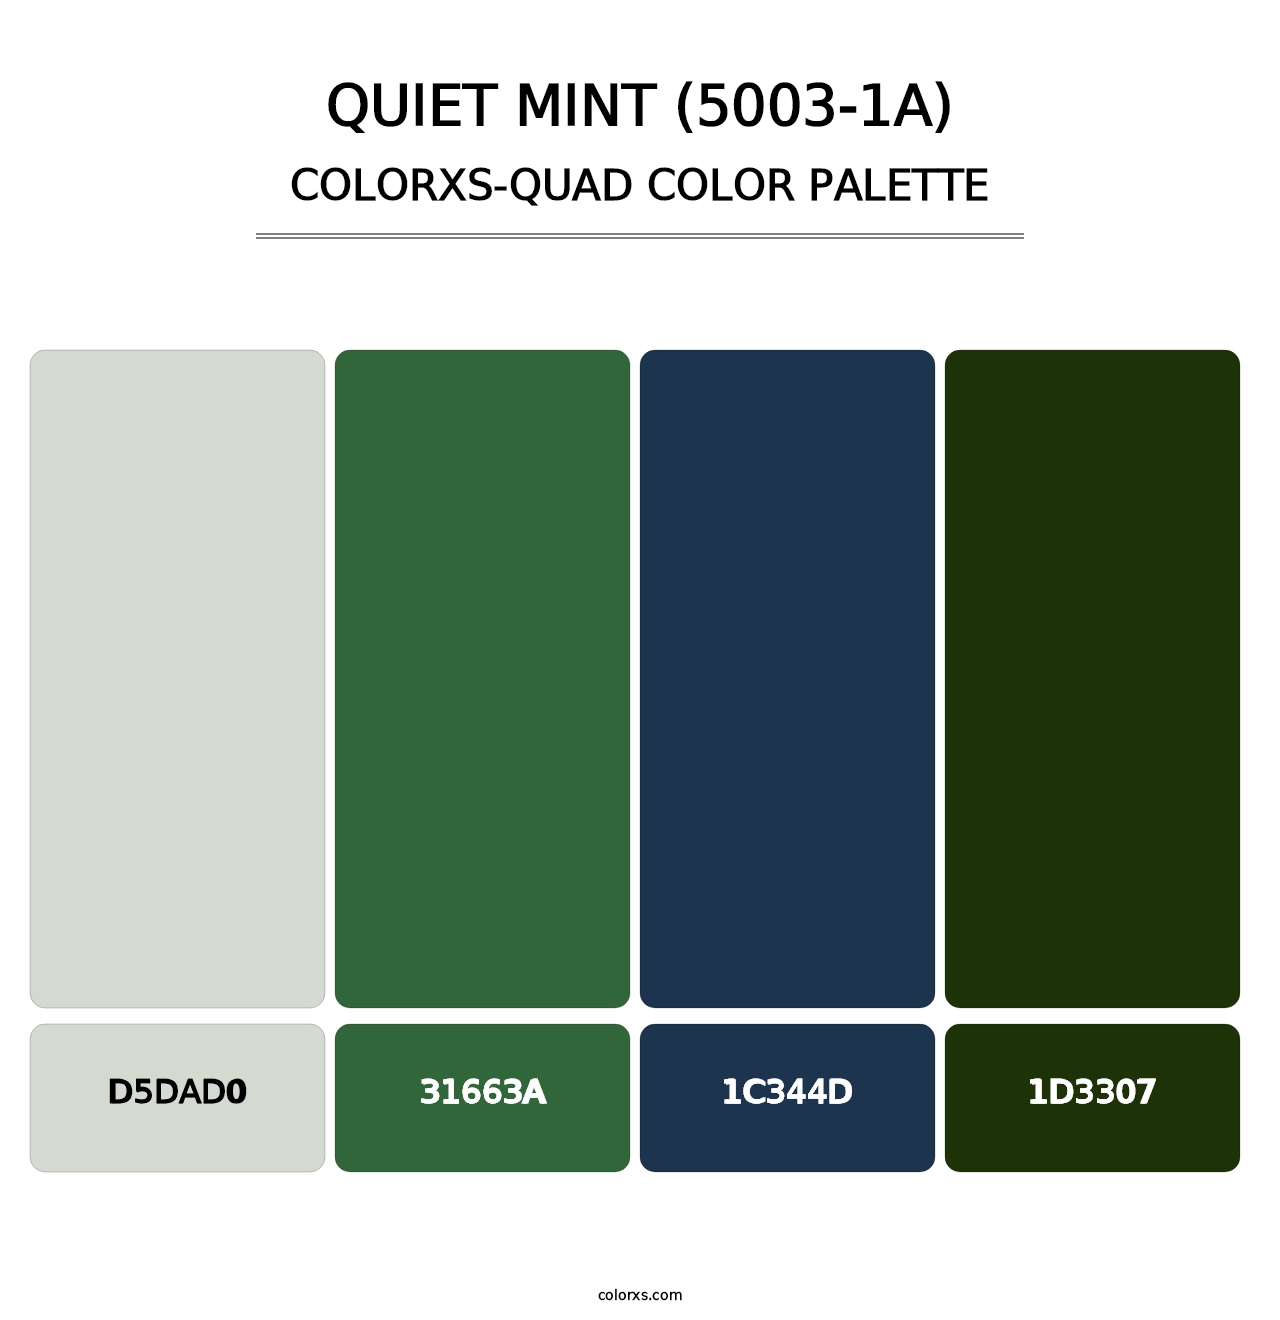 Quiet Mint (5003-1A) - Colorxs Quad Palette